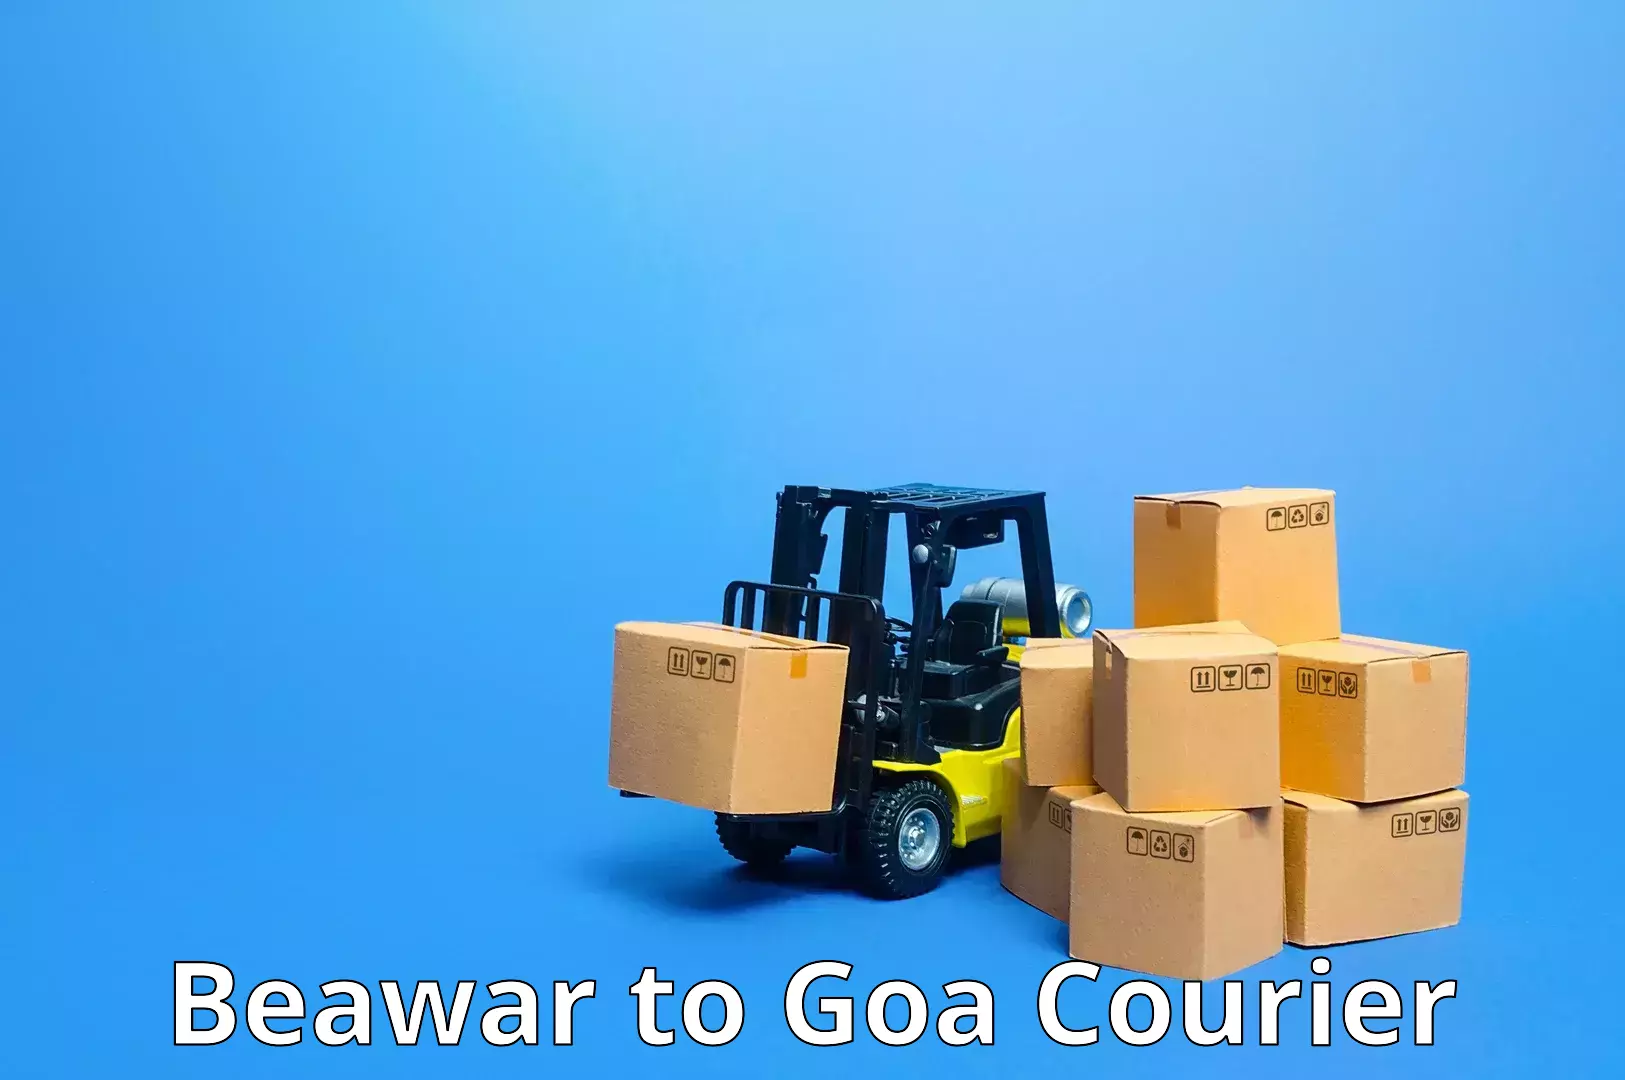 Nationwide shipping capabilities Beawar to IIT Goa